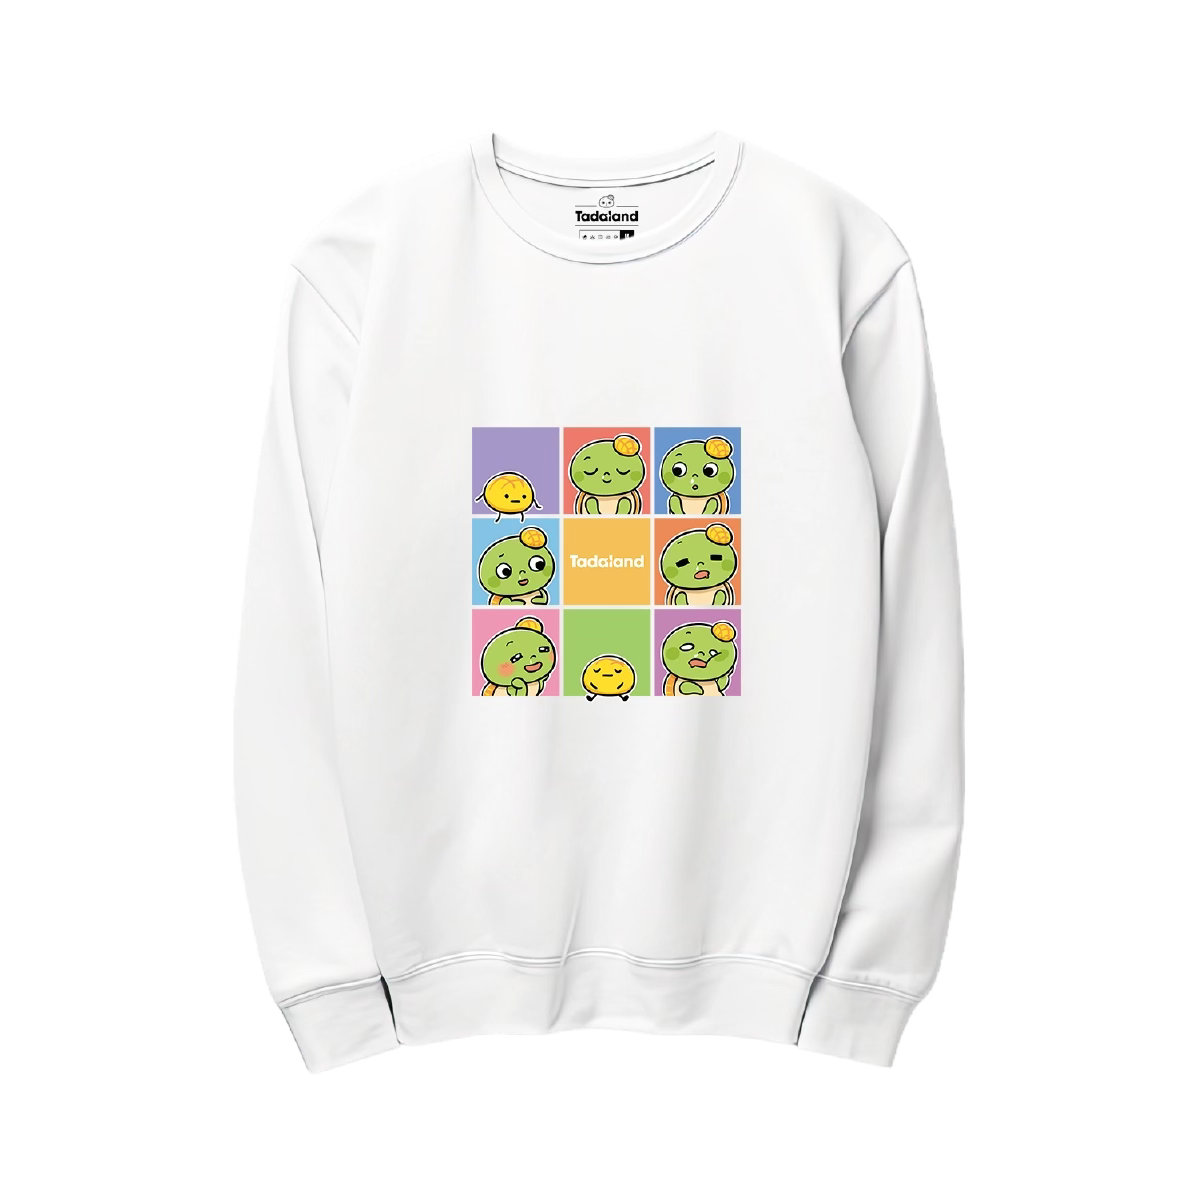 Apollo Square Collage Sweatshirt (INFP MBTI)